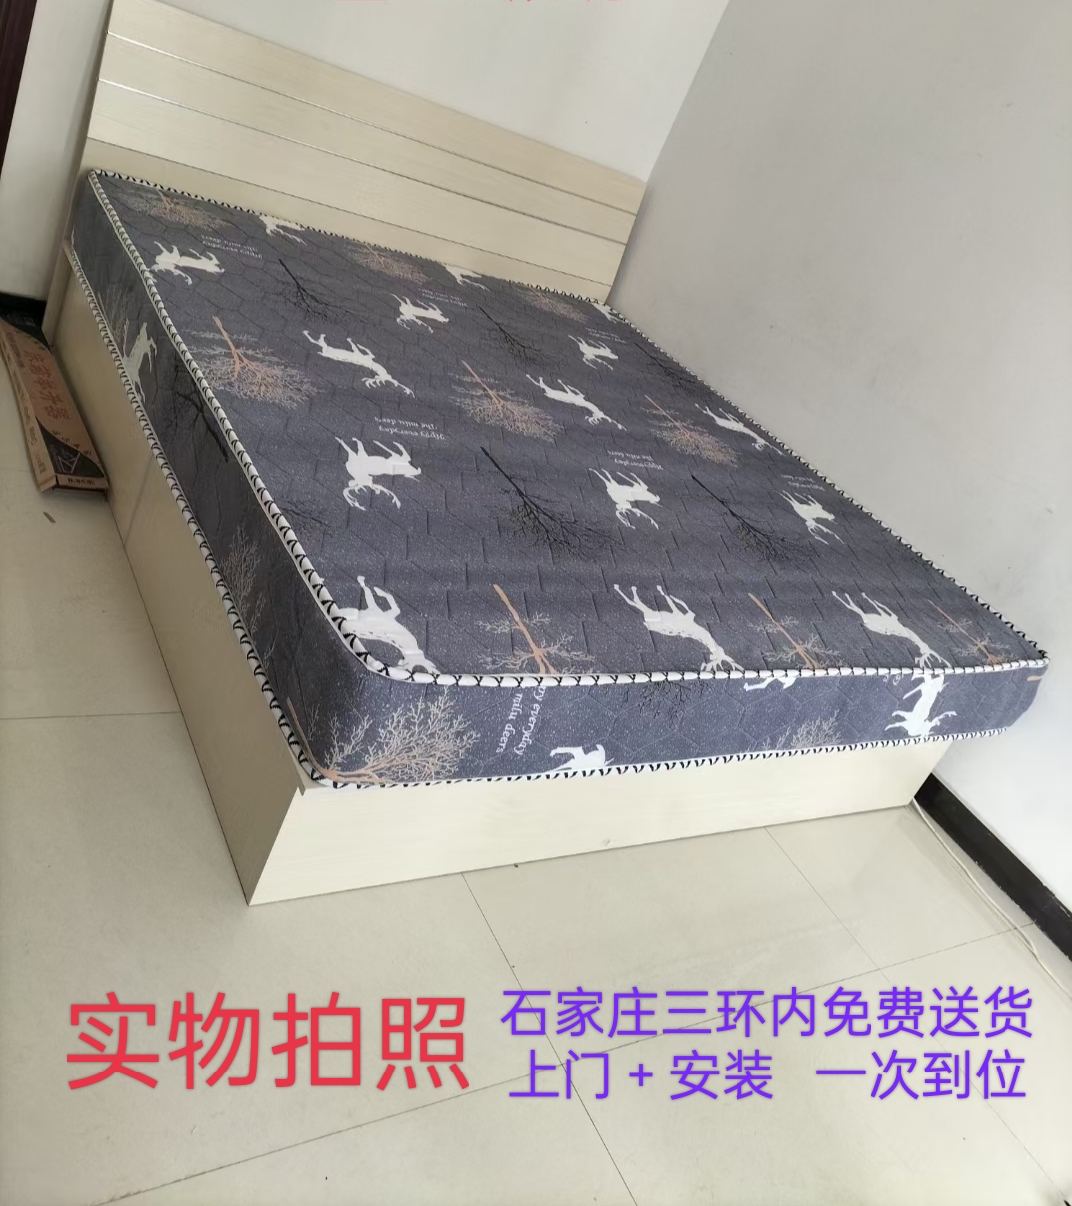 石家庄特价出租房用板式床双人床单人床箱体床储物床1.51.8米包邮